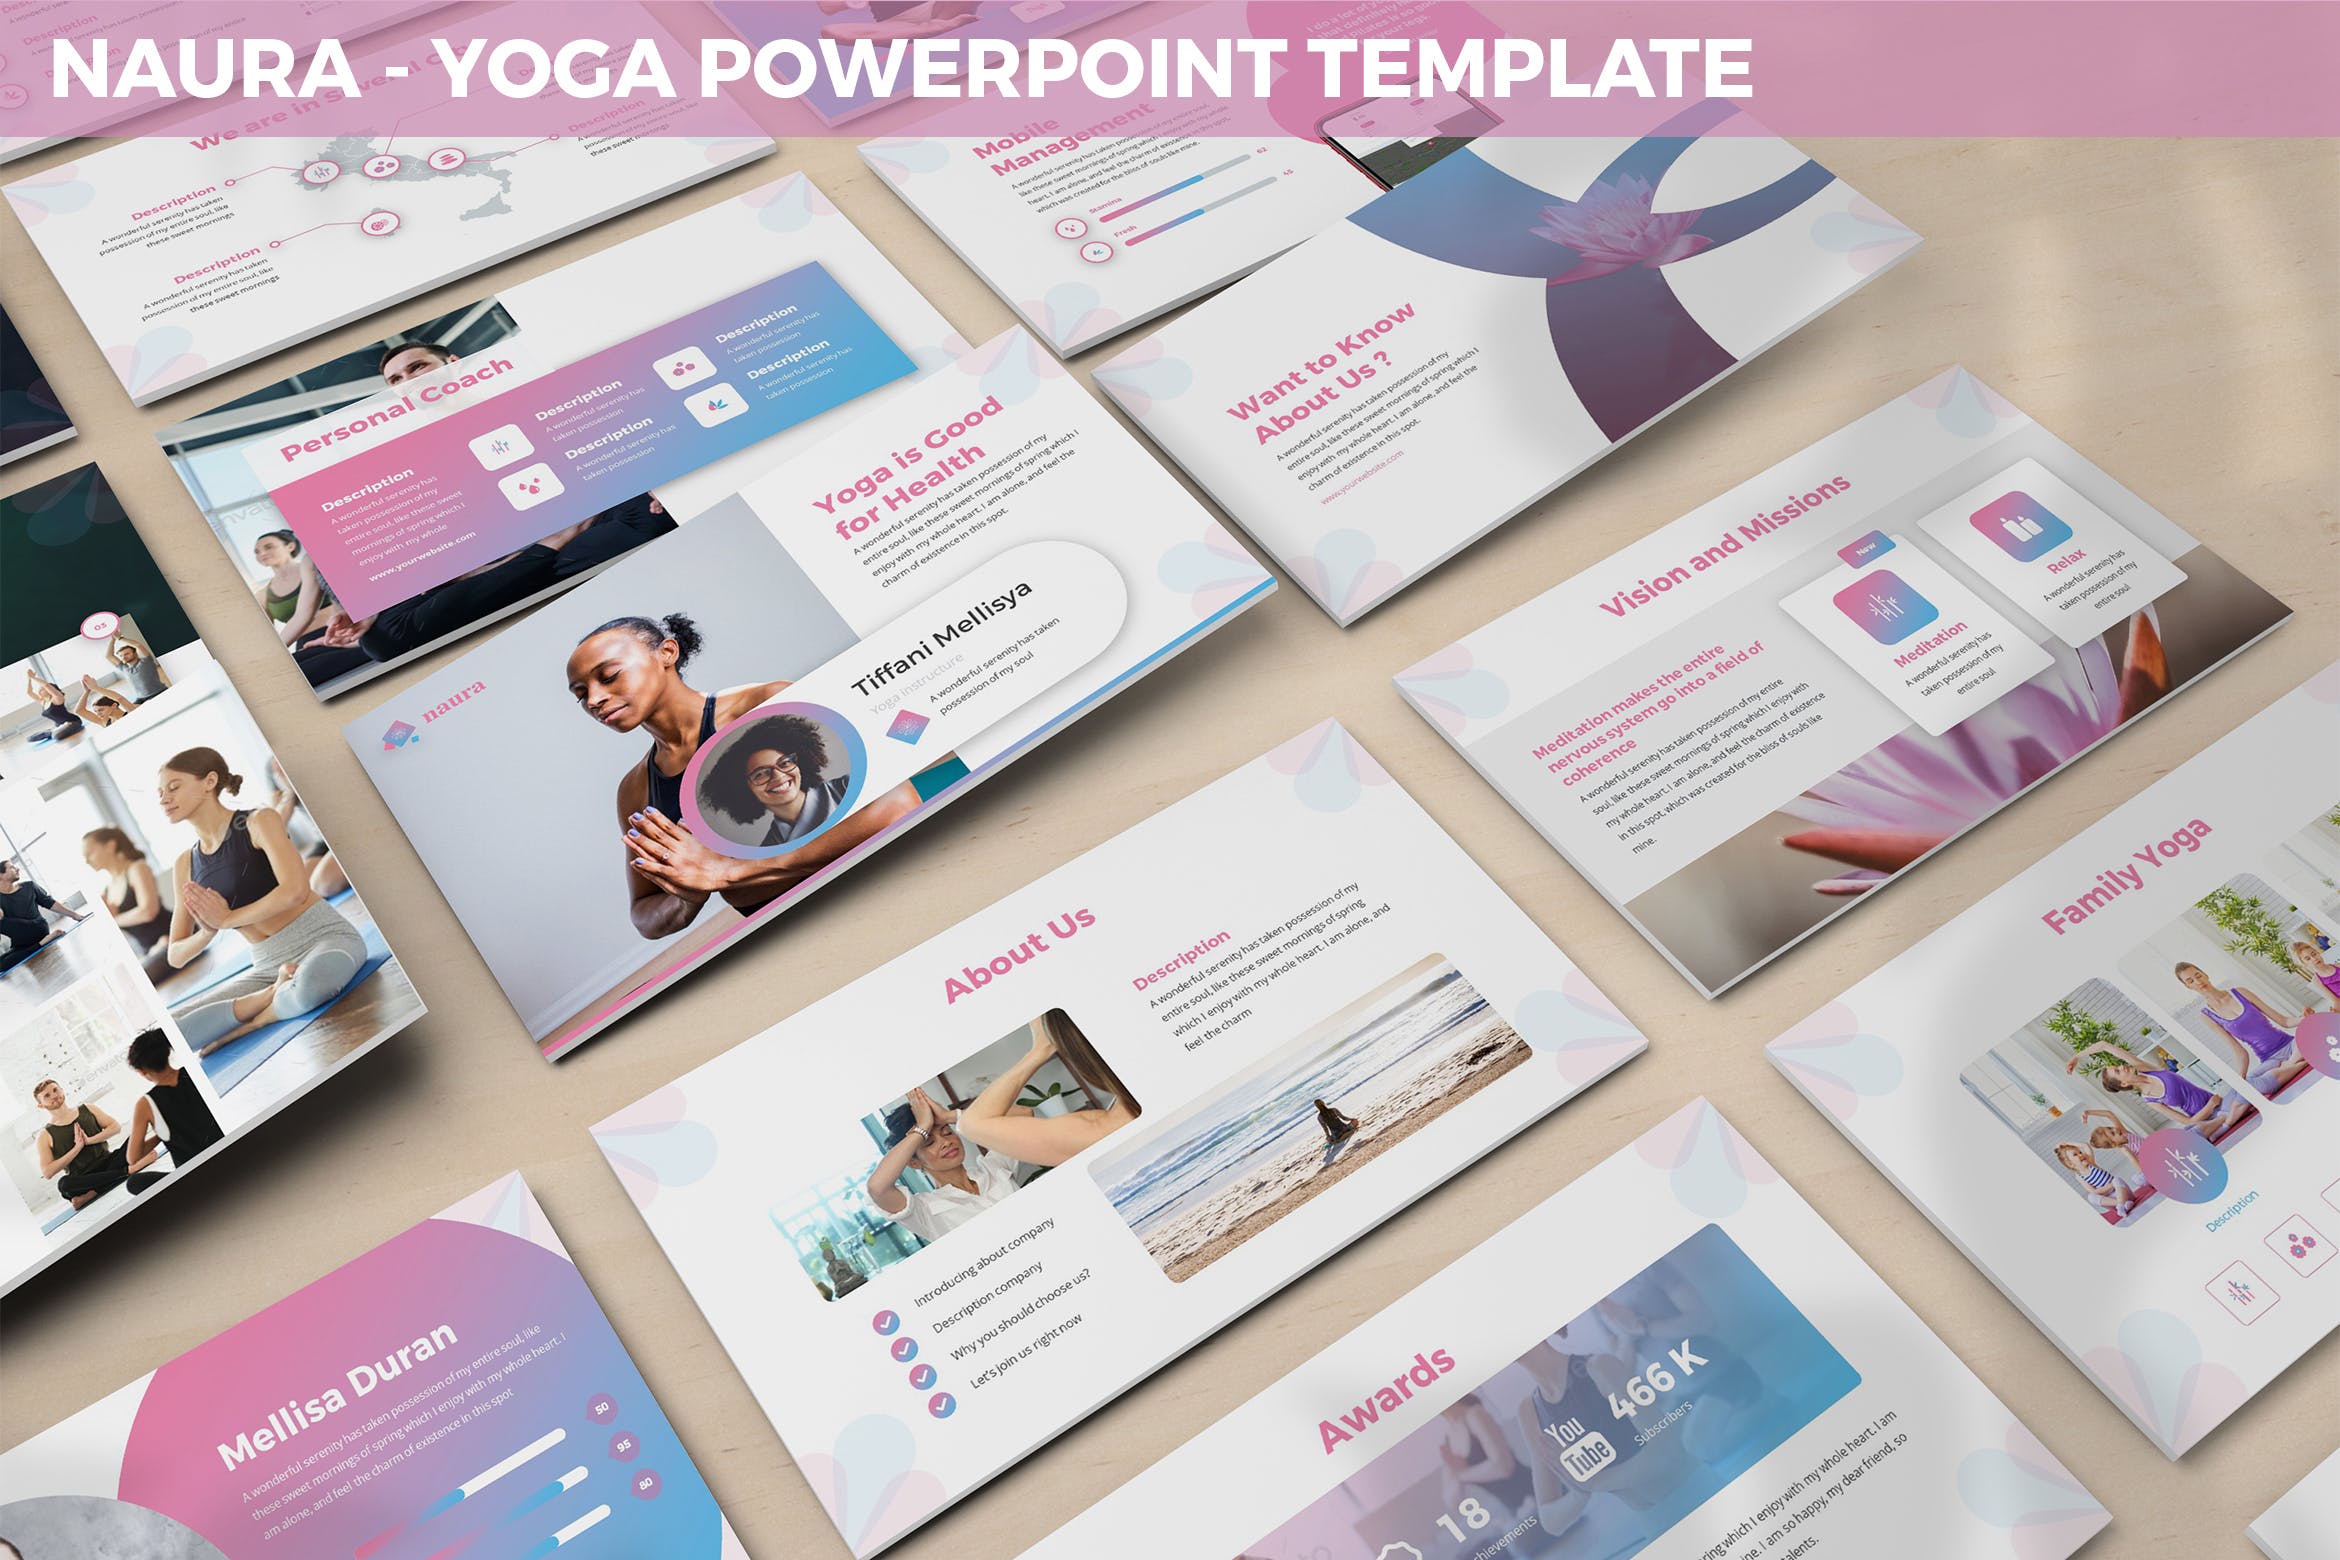 瑜伽培训机构简介PPT设计模板 Naura – Yoga Powerpoint Template插图